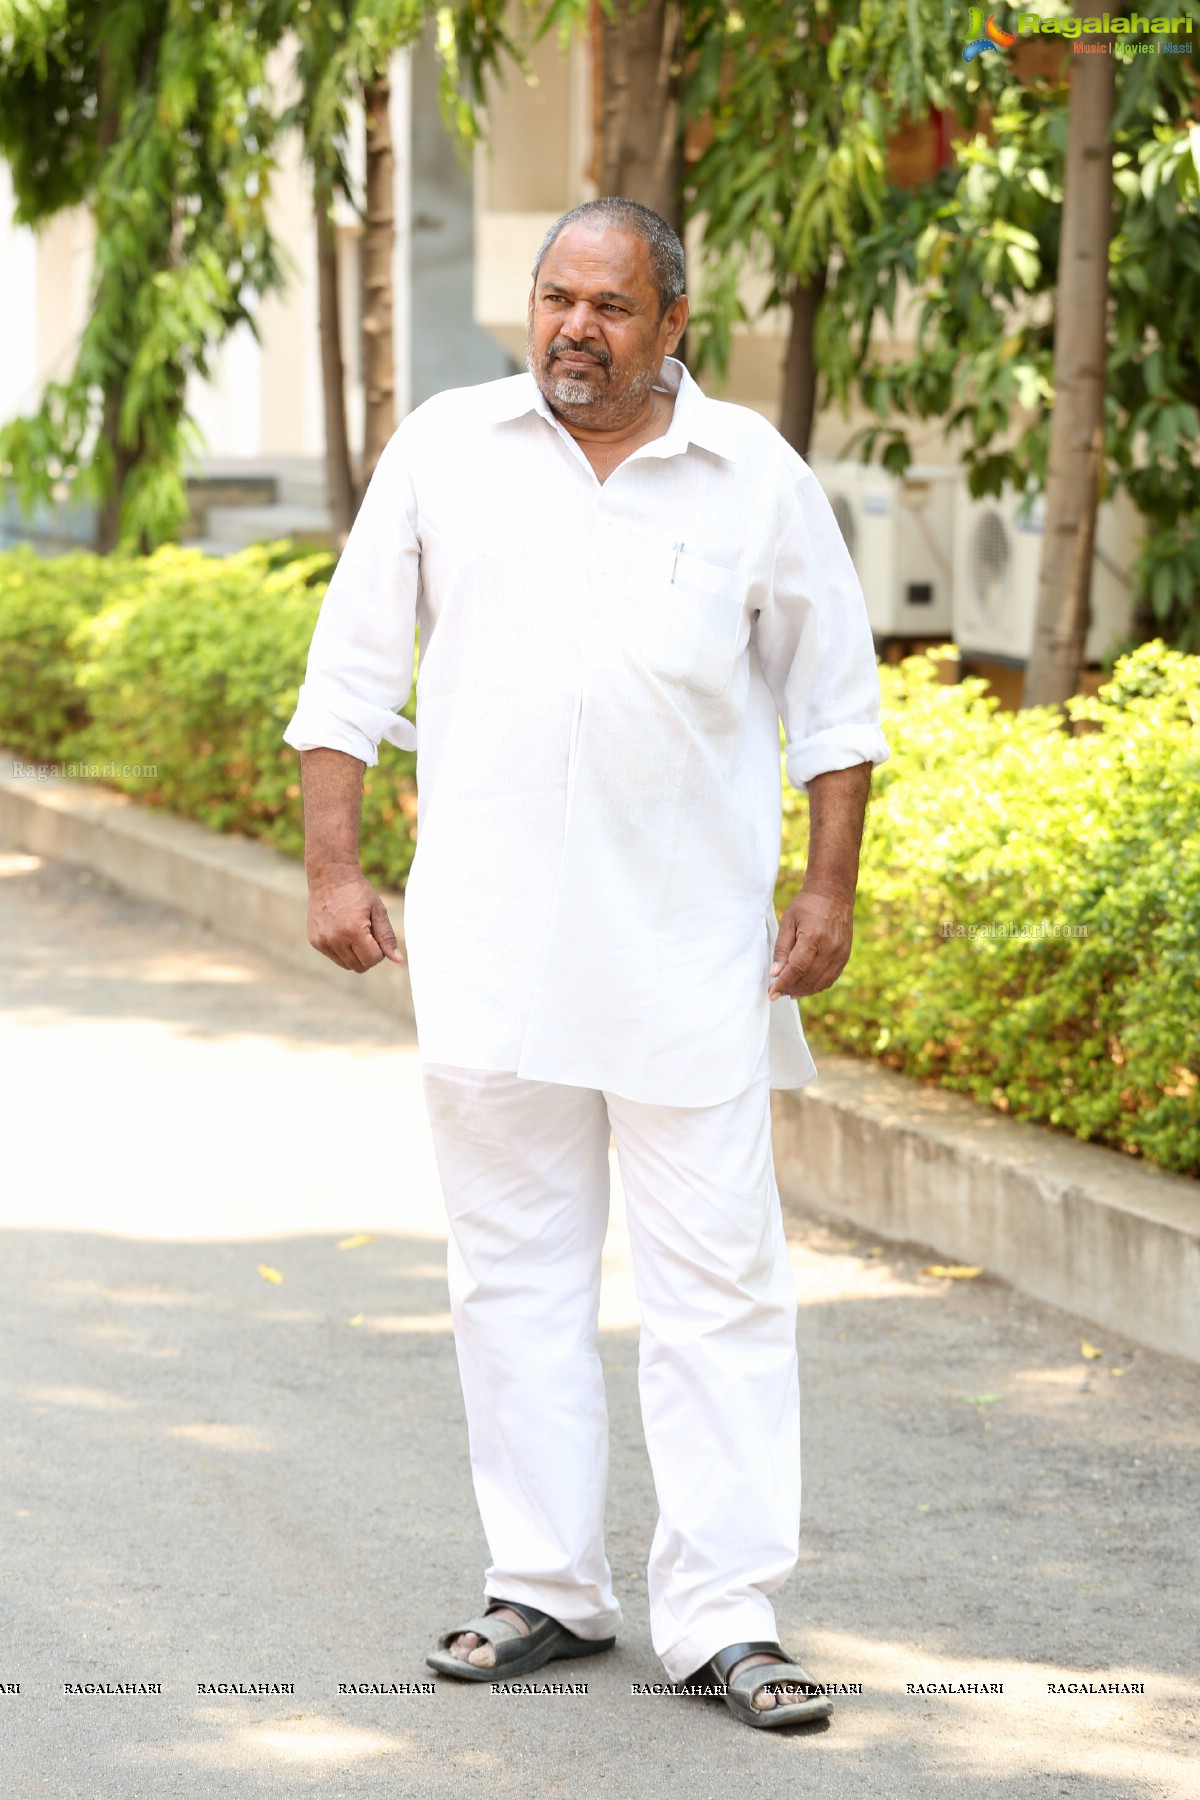 R Narayana Murthy